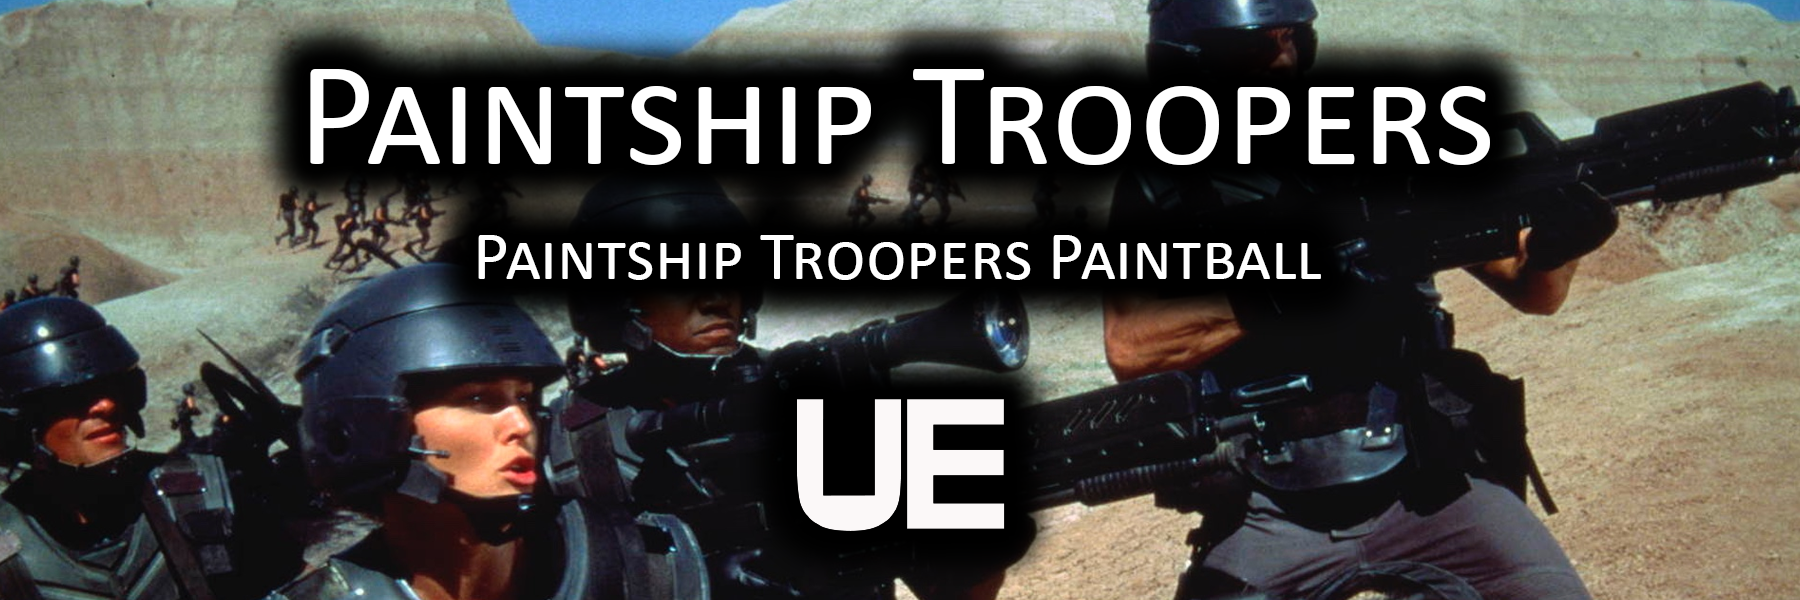 Paintship Troopers | Paintship Troopers Paintball